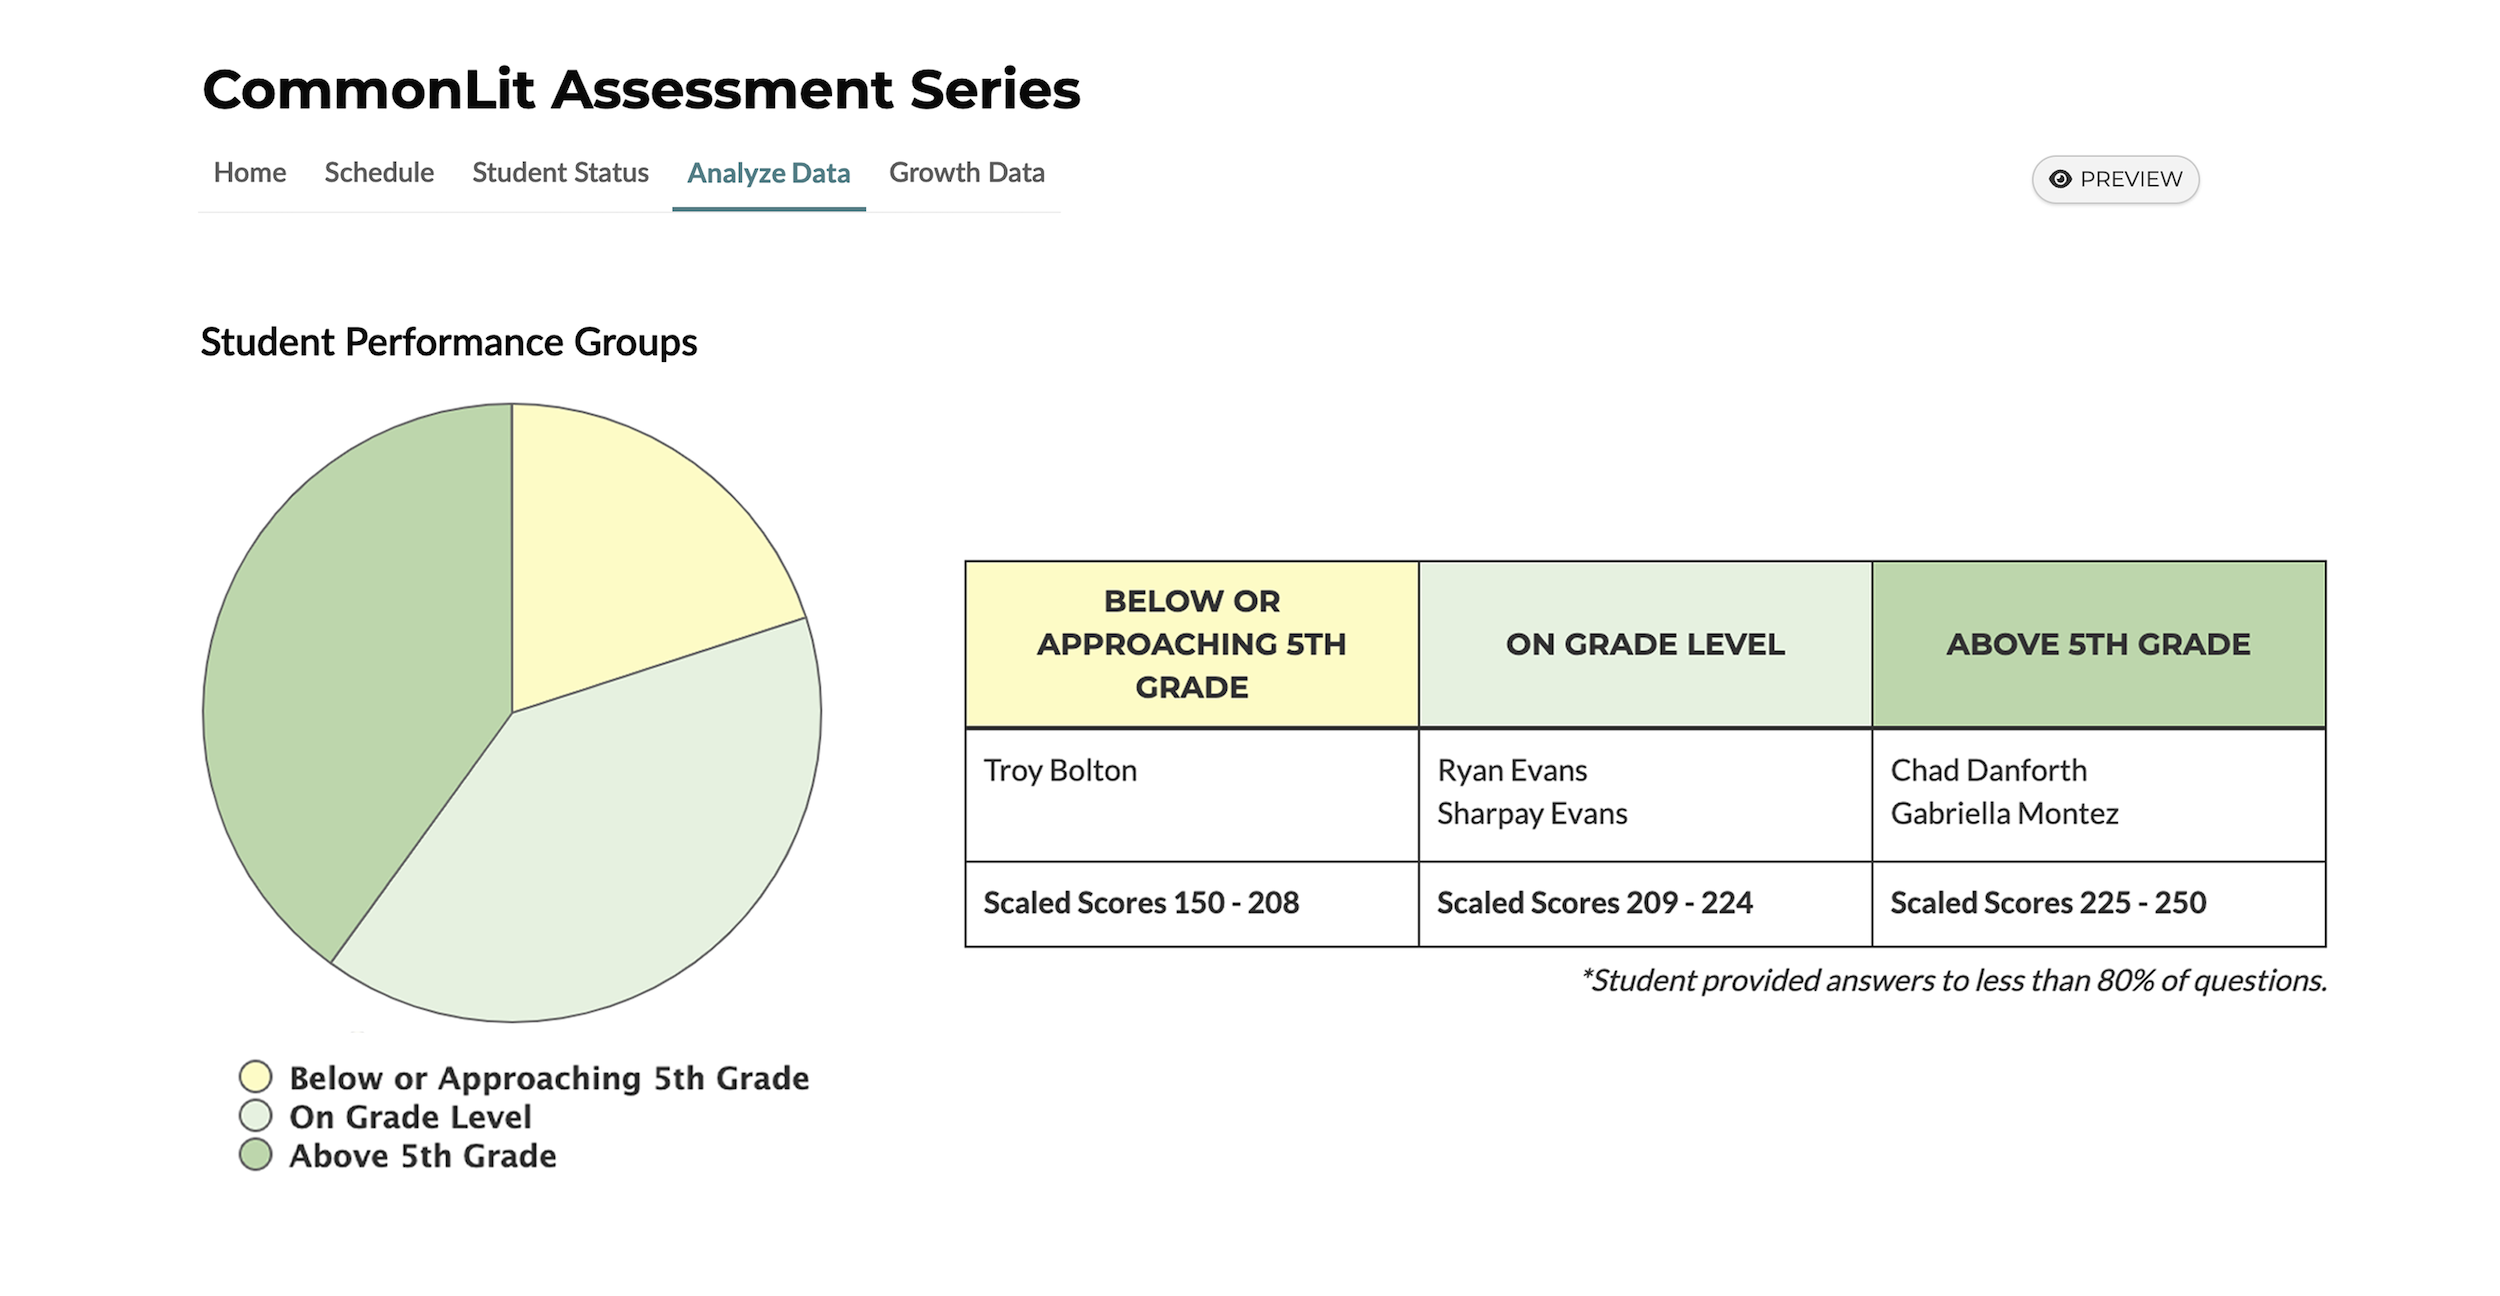 Una captura de pantalla que muestra un gráfico circular y una tabla de datos de desempeño de los estudiantes de la serie de evaluaciones CommonLit. El gráfico circular y la tabla tienen tres categorías: por debajo o acercándose al 5.° grado, al nivel del grado y por encima del 5.° grado.